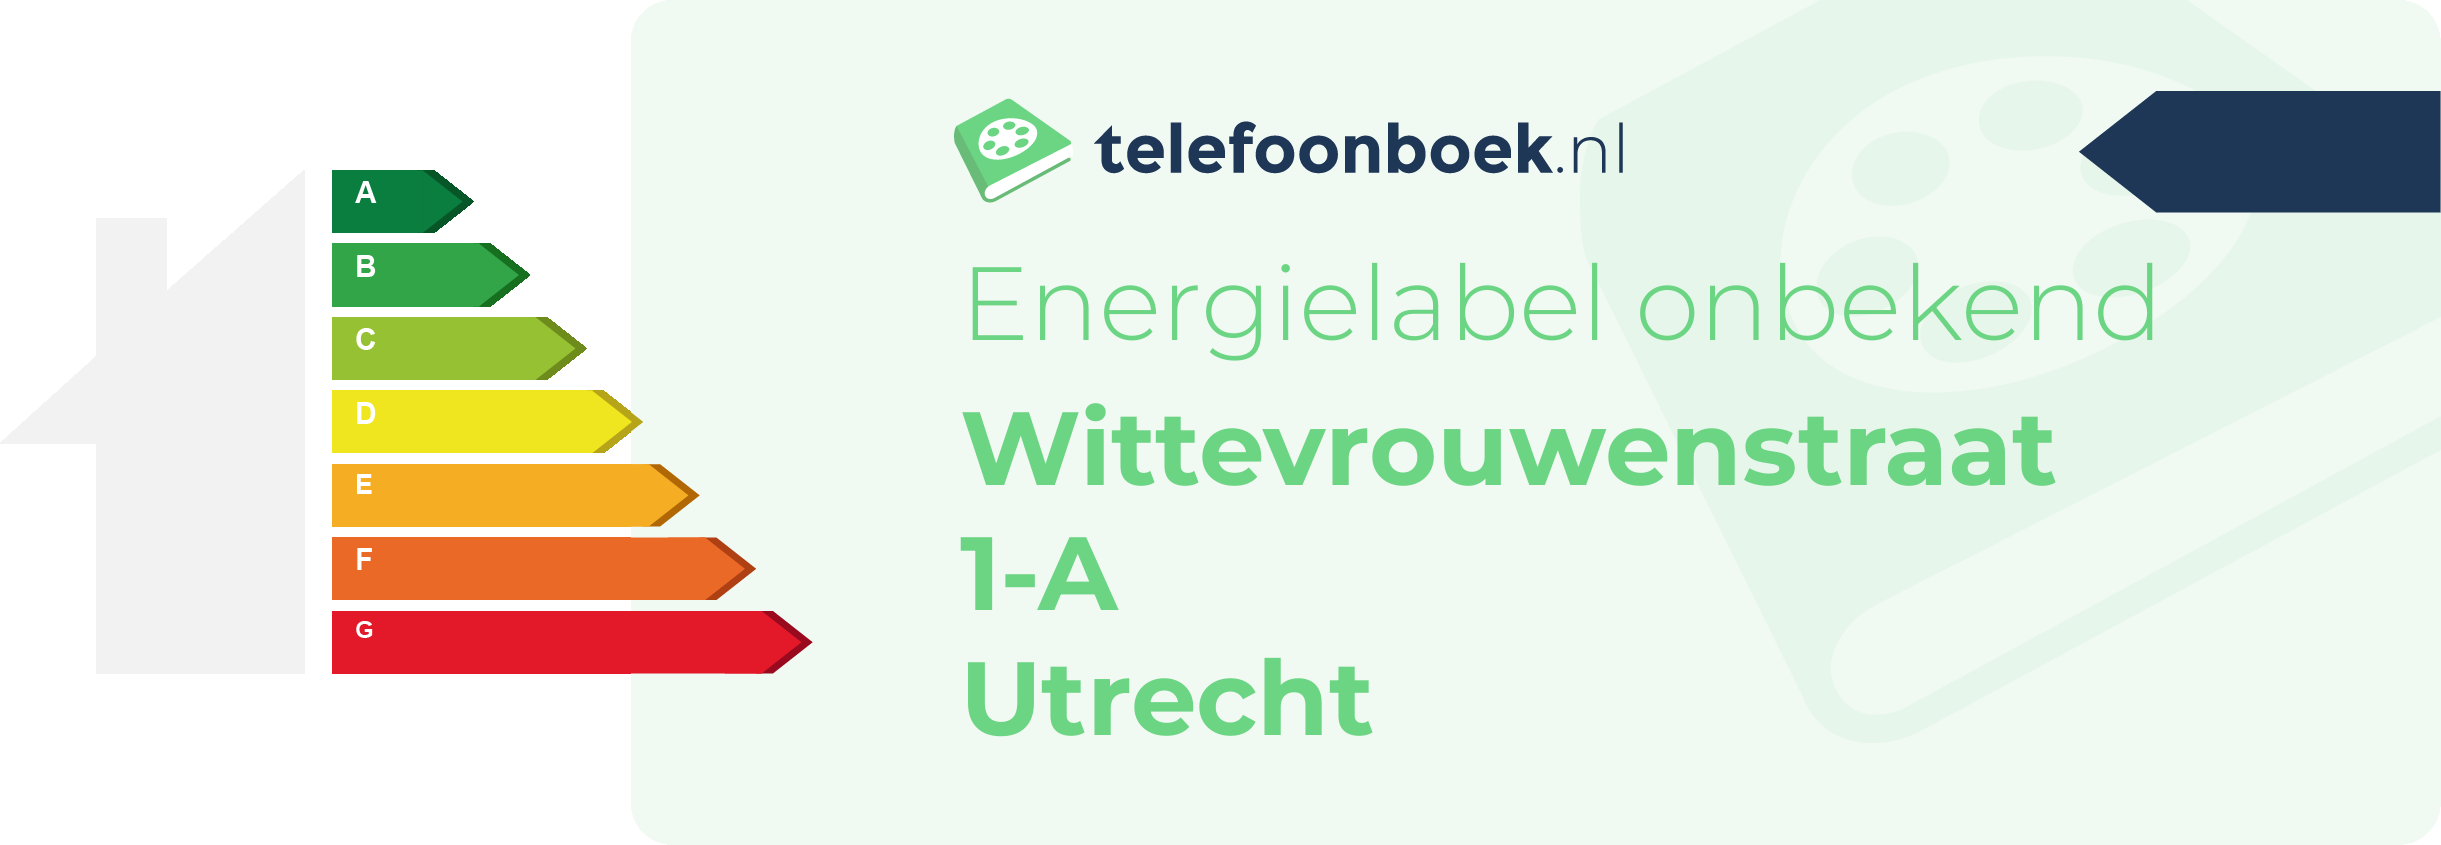 Energielabel Wittevrouwenstraat 1-A Utrecht